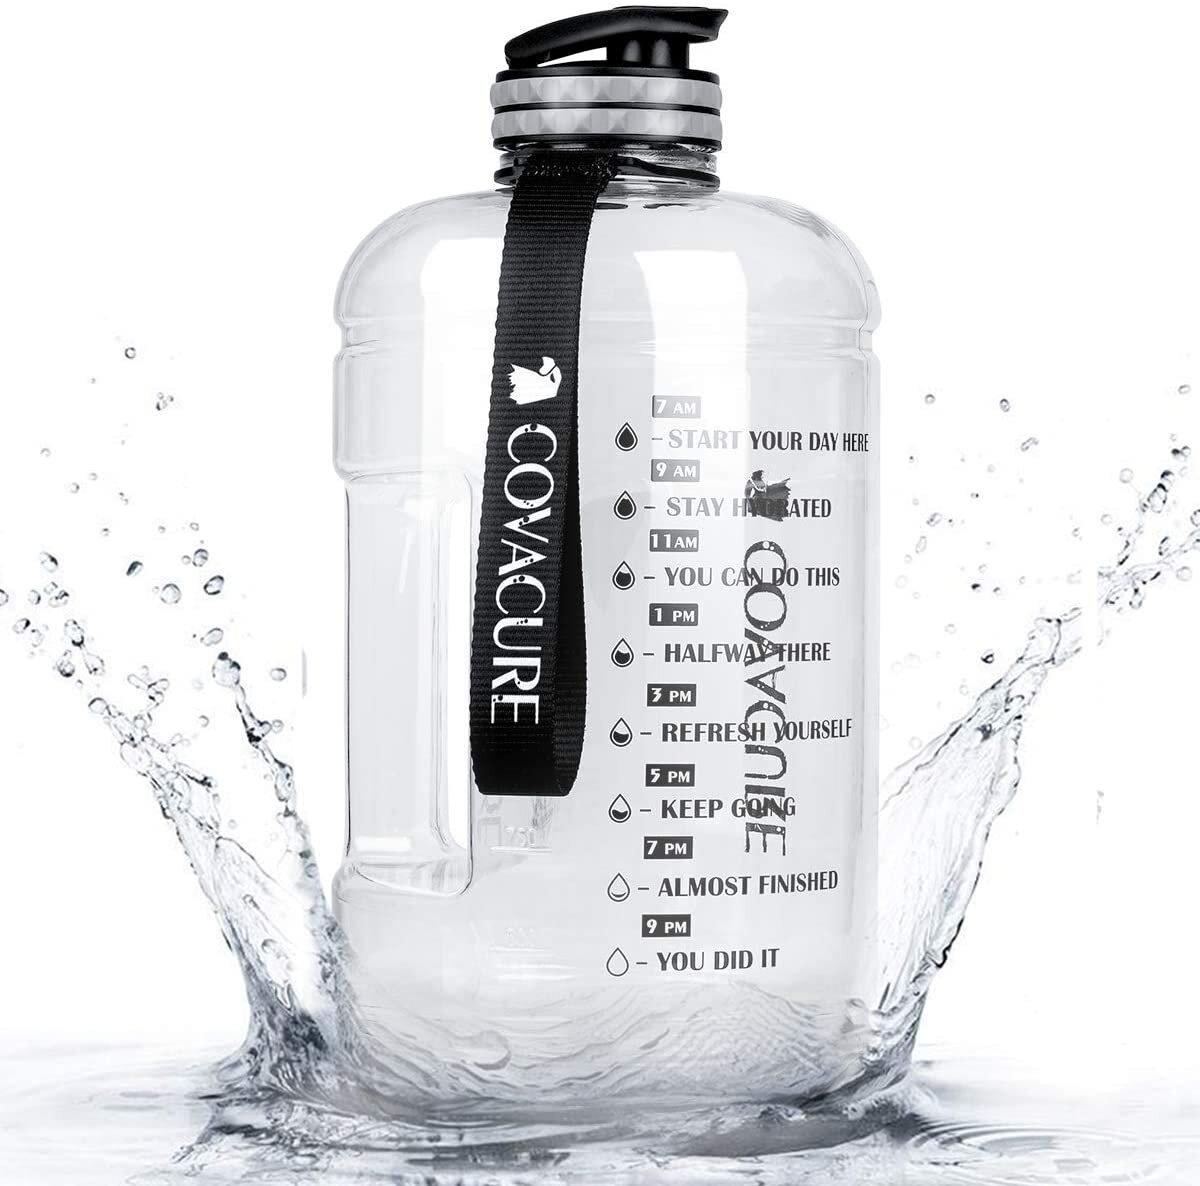 1-gallon water jug